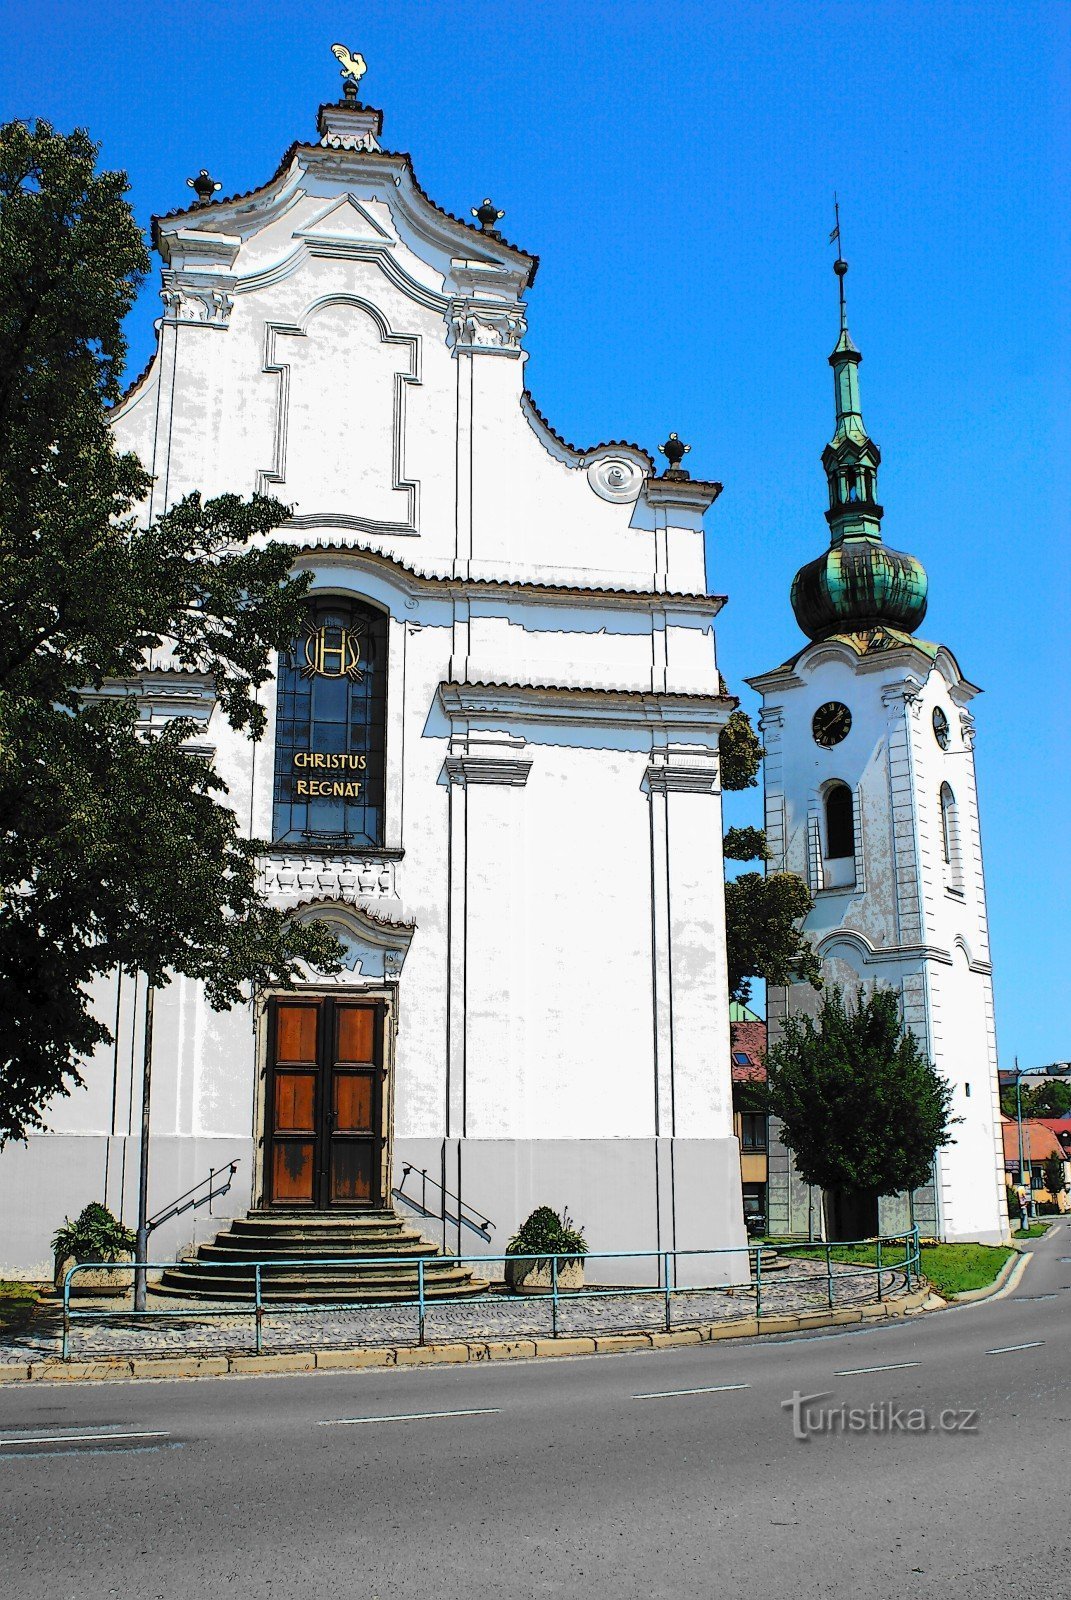 Pelhřimov - igreja de St. Bem-vindo com campainha tocando